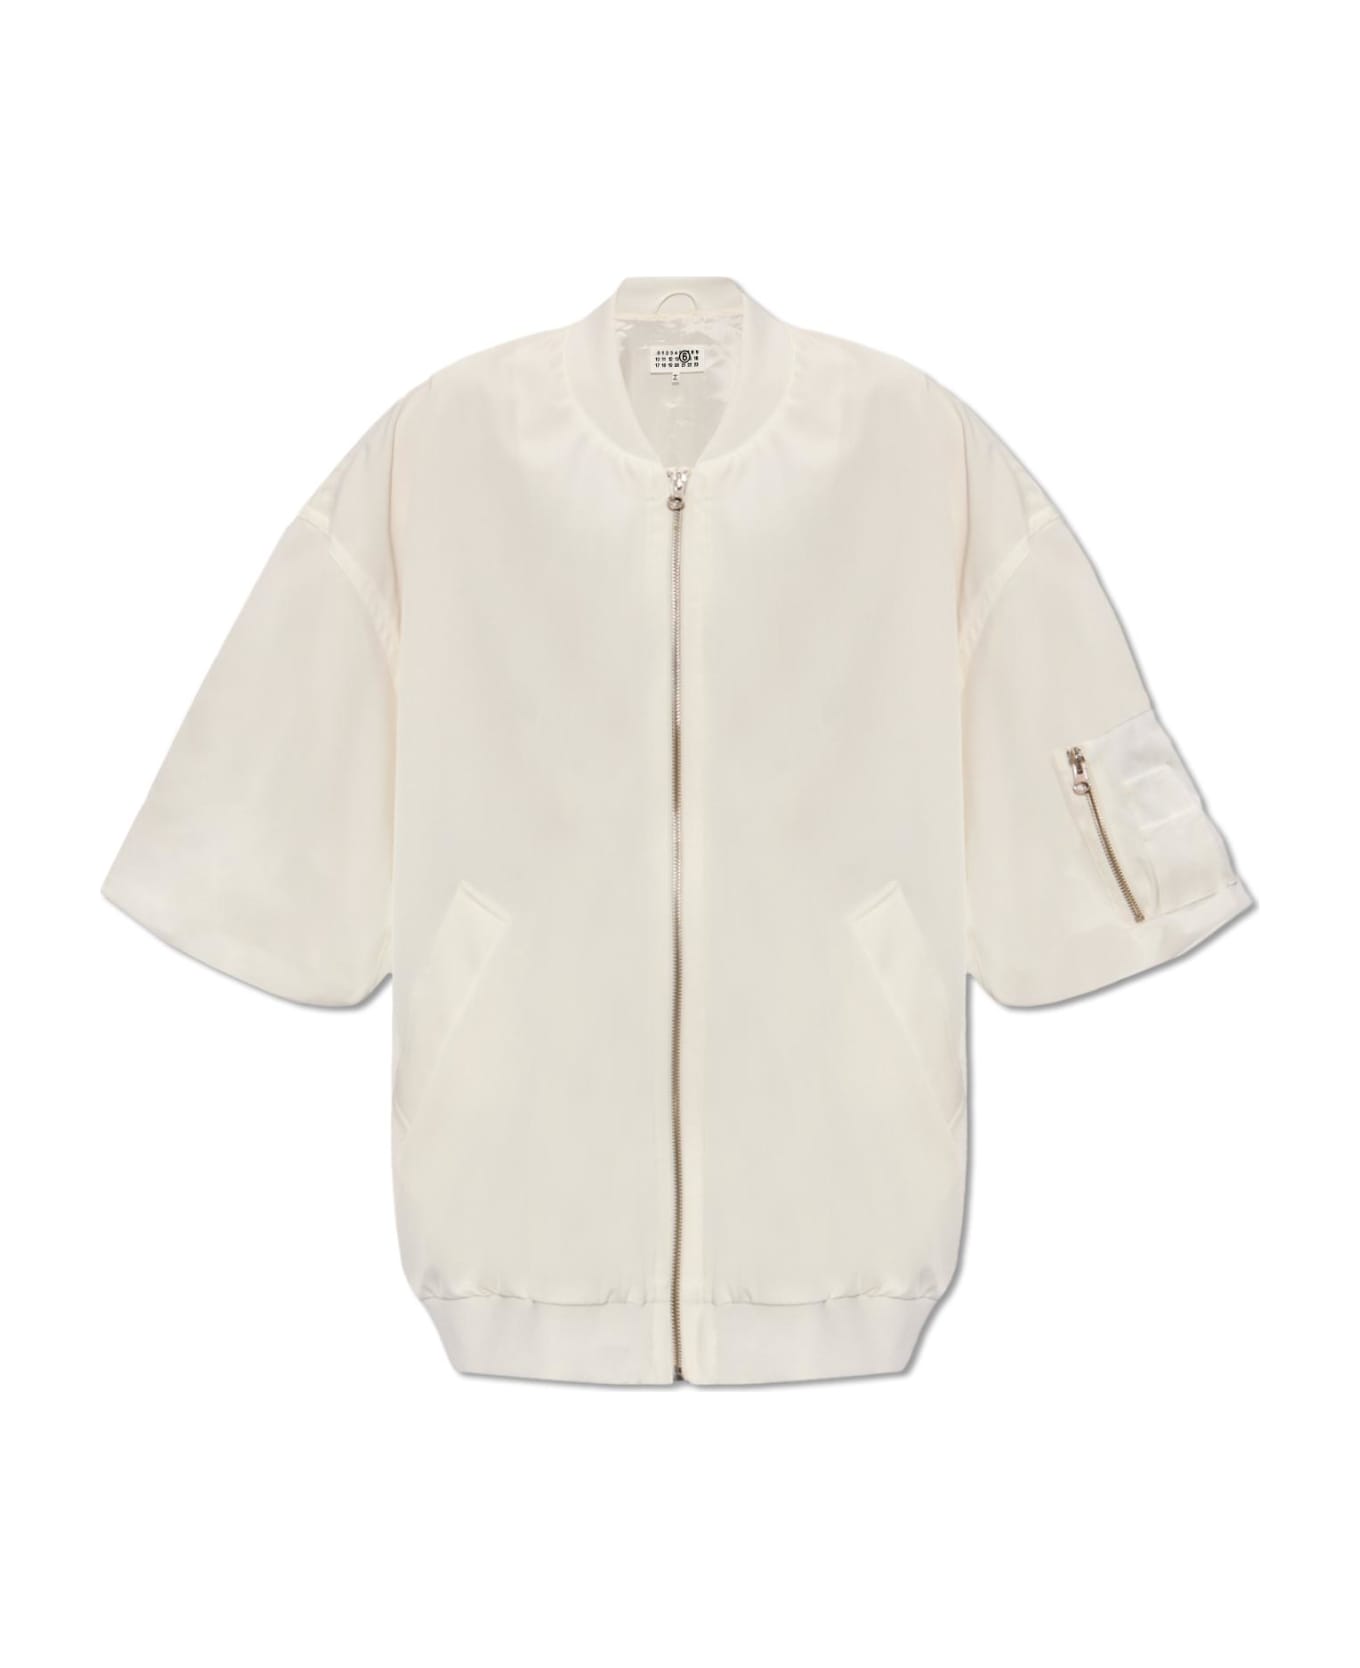 MM6 Maison Margiela Jacket With Short Sleeves - Bianco